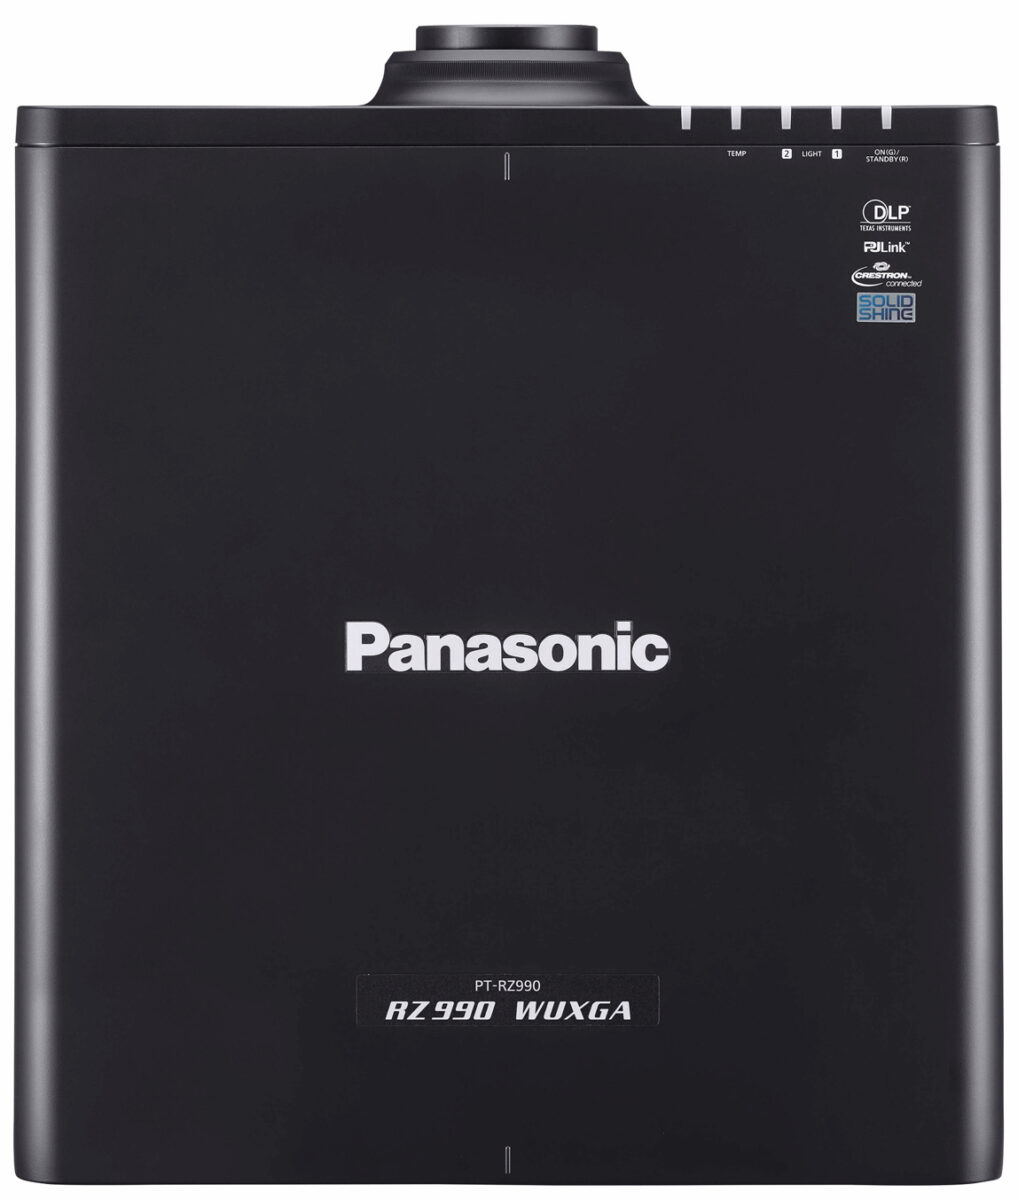 Panasonic PT-RZ990